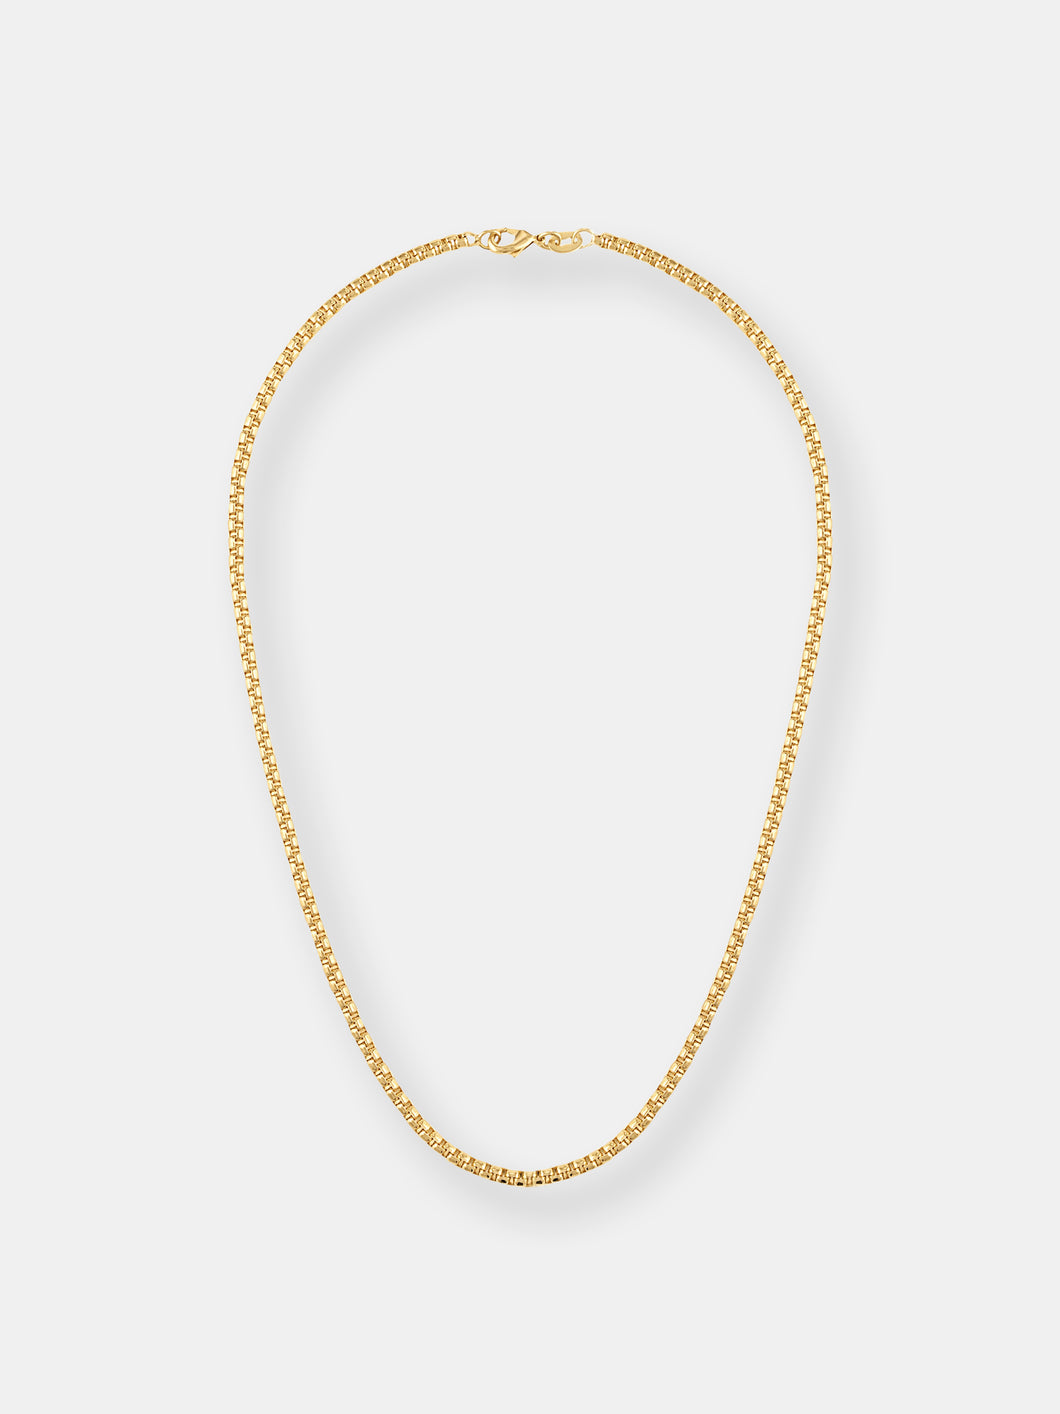 Devon Venetian Chain Necklace